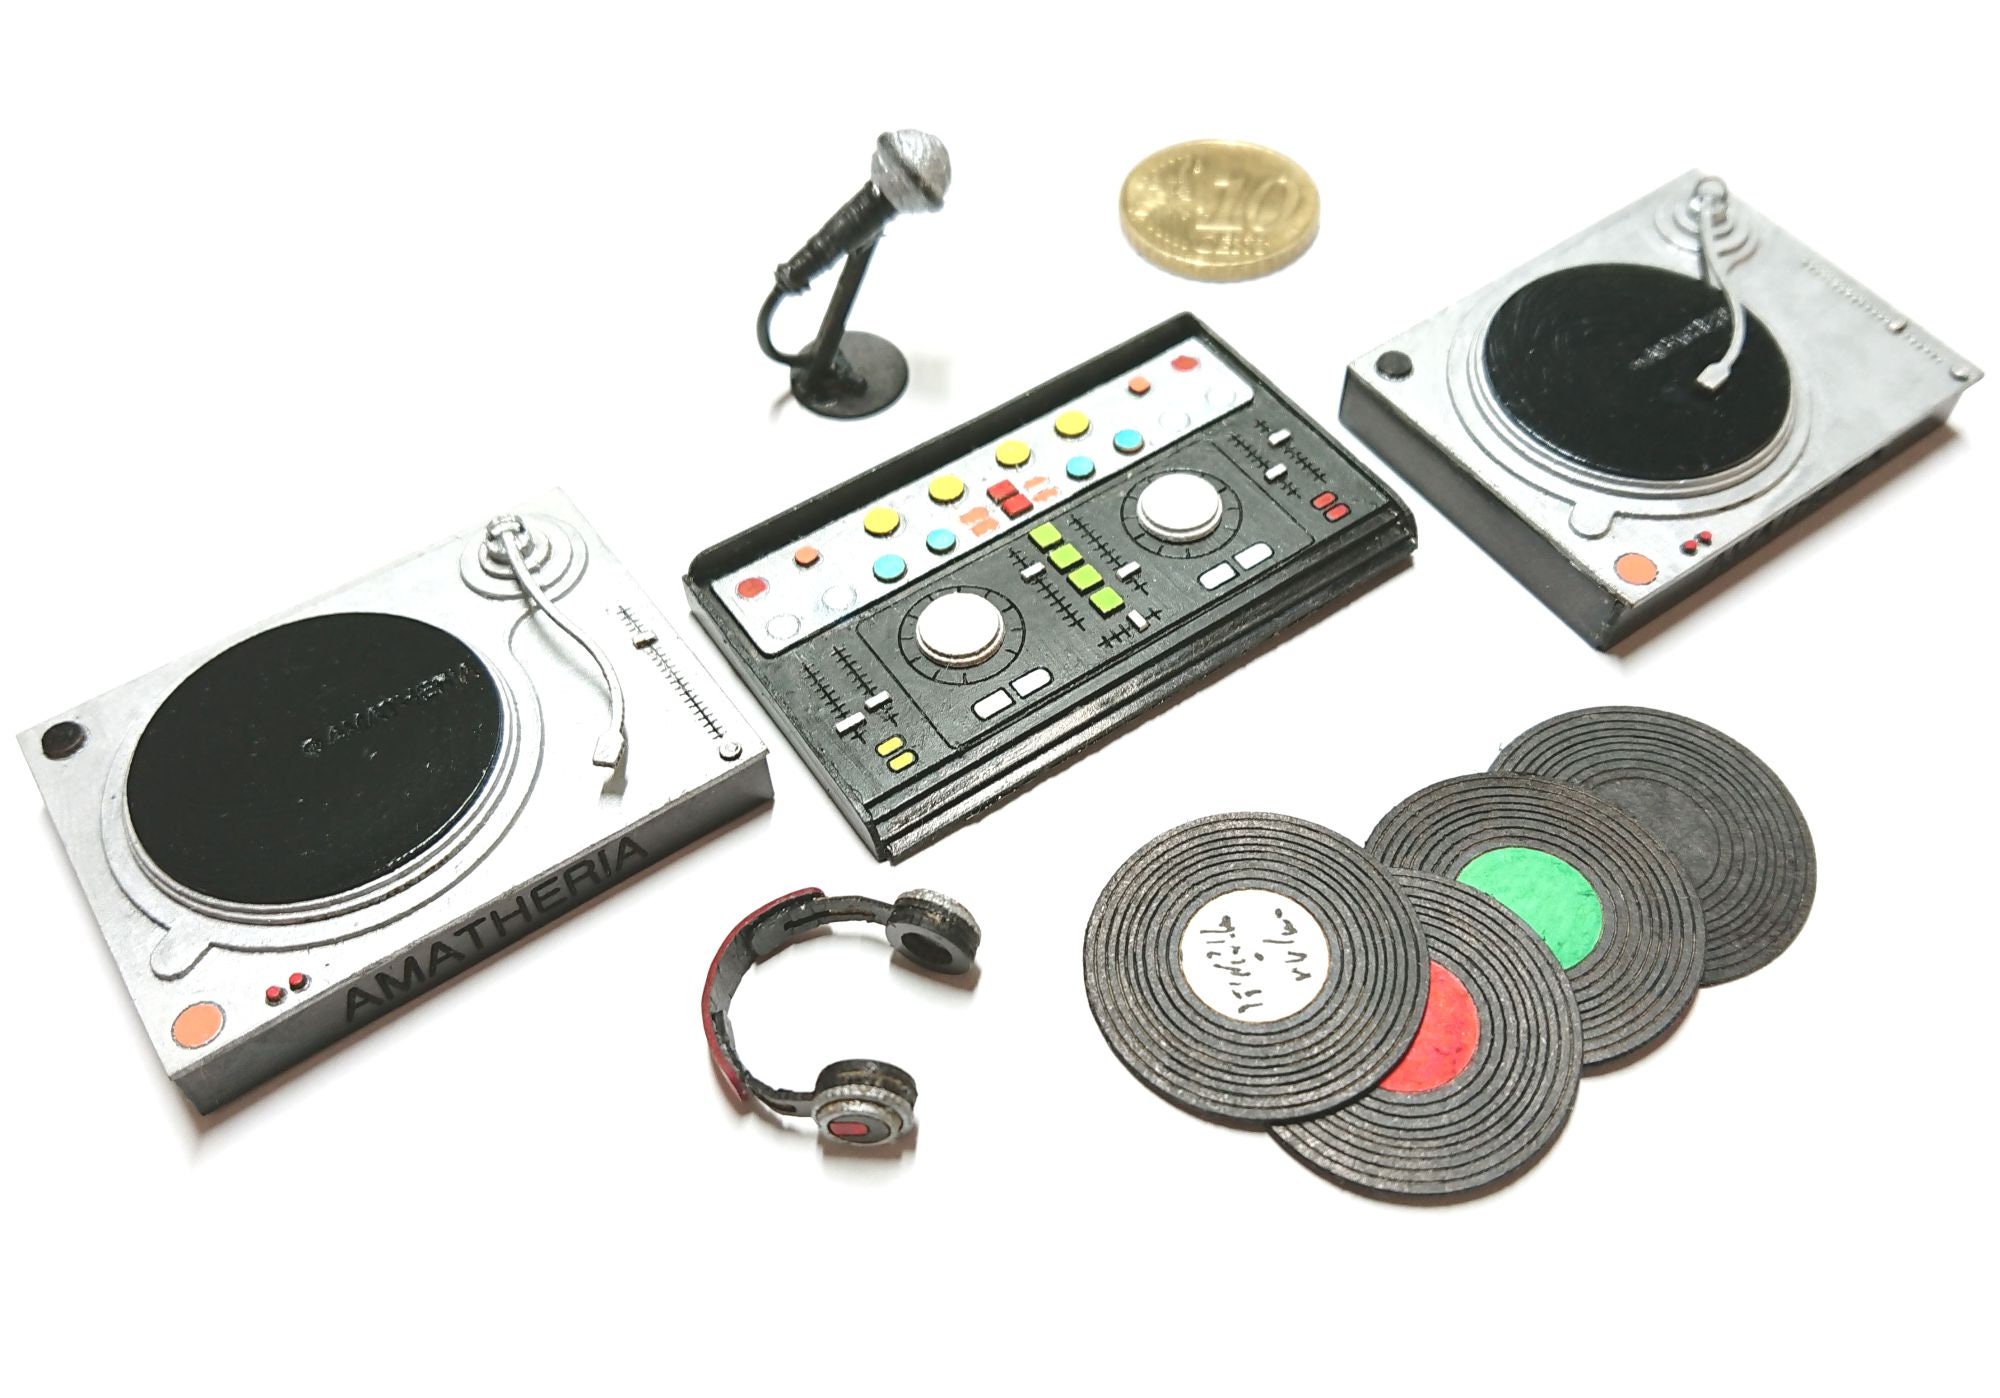 Accessoires de musique Minifigure : Platine vinyle / Tourne-disque vinyle -  modèle composé de pièces LEGO - pour enfants, adultes, mélomanes